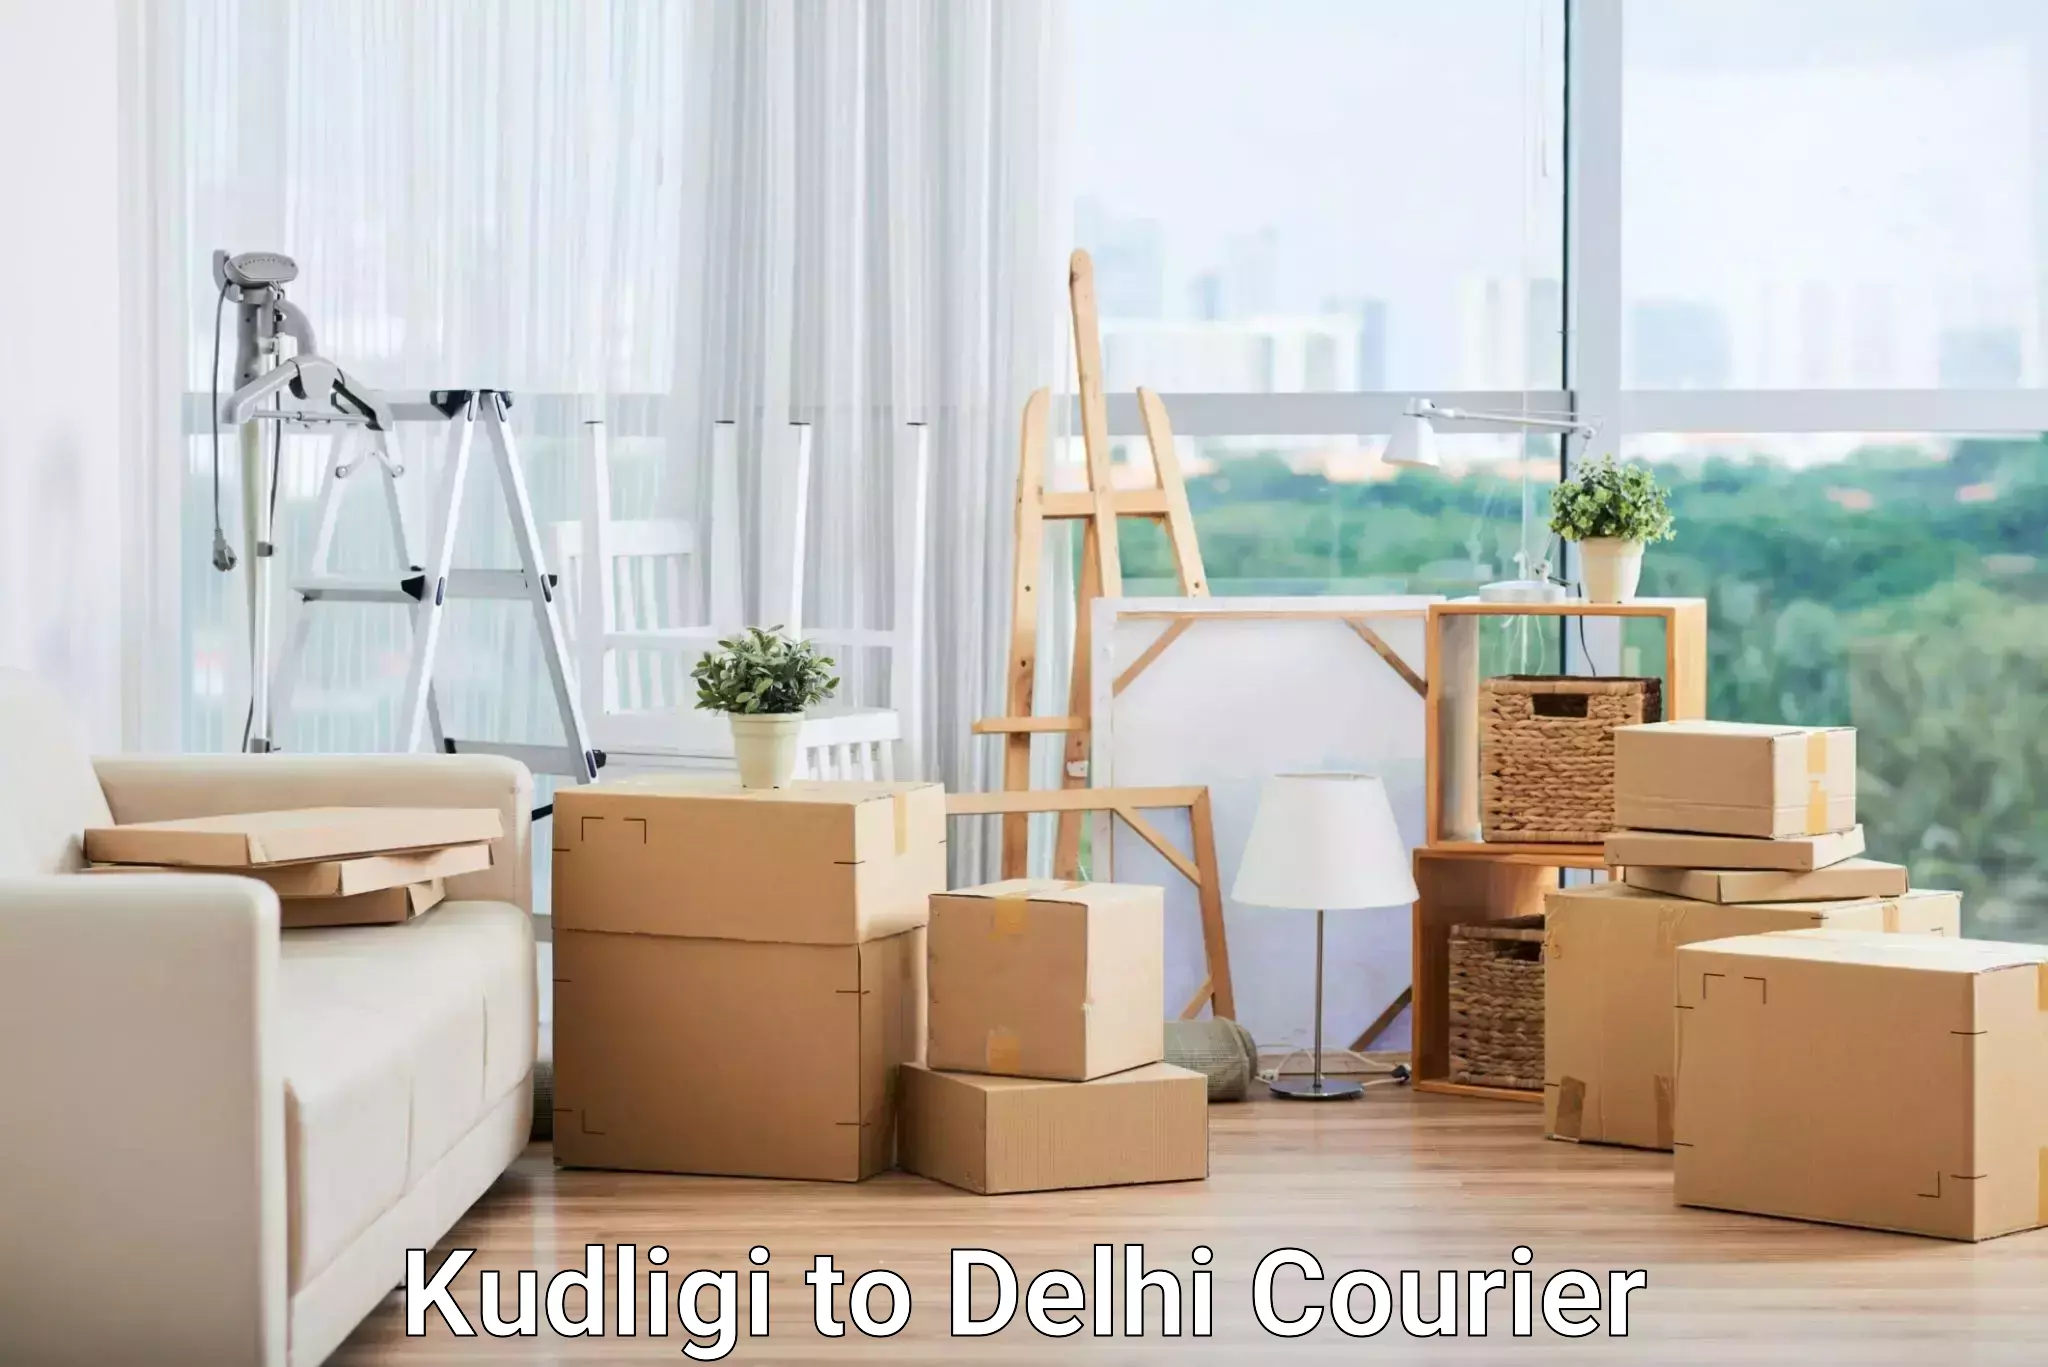 Retail shipping solutions Kudligi to Delhi